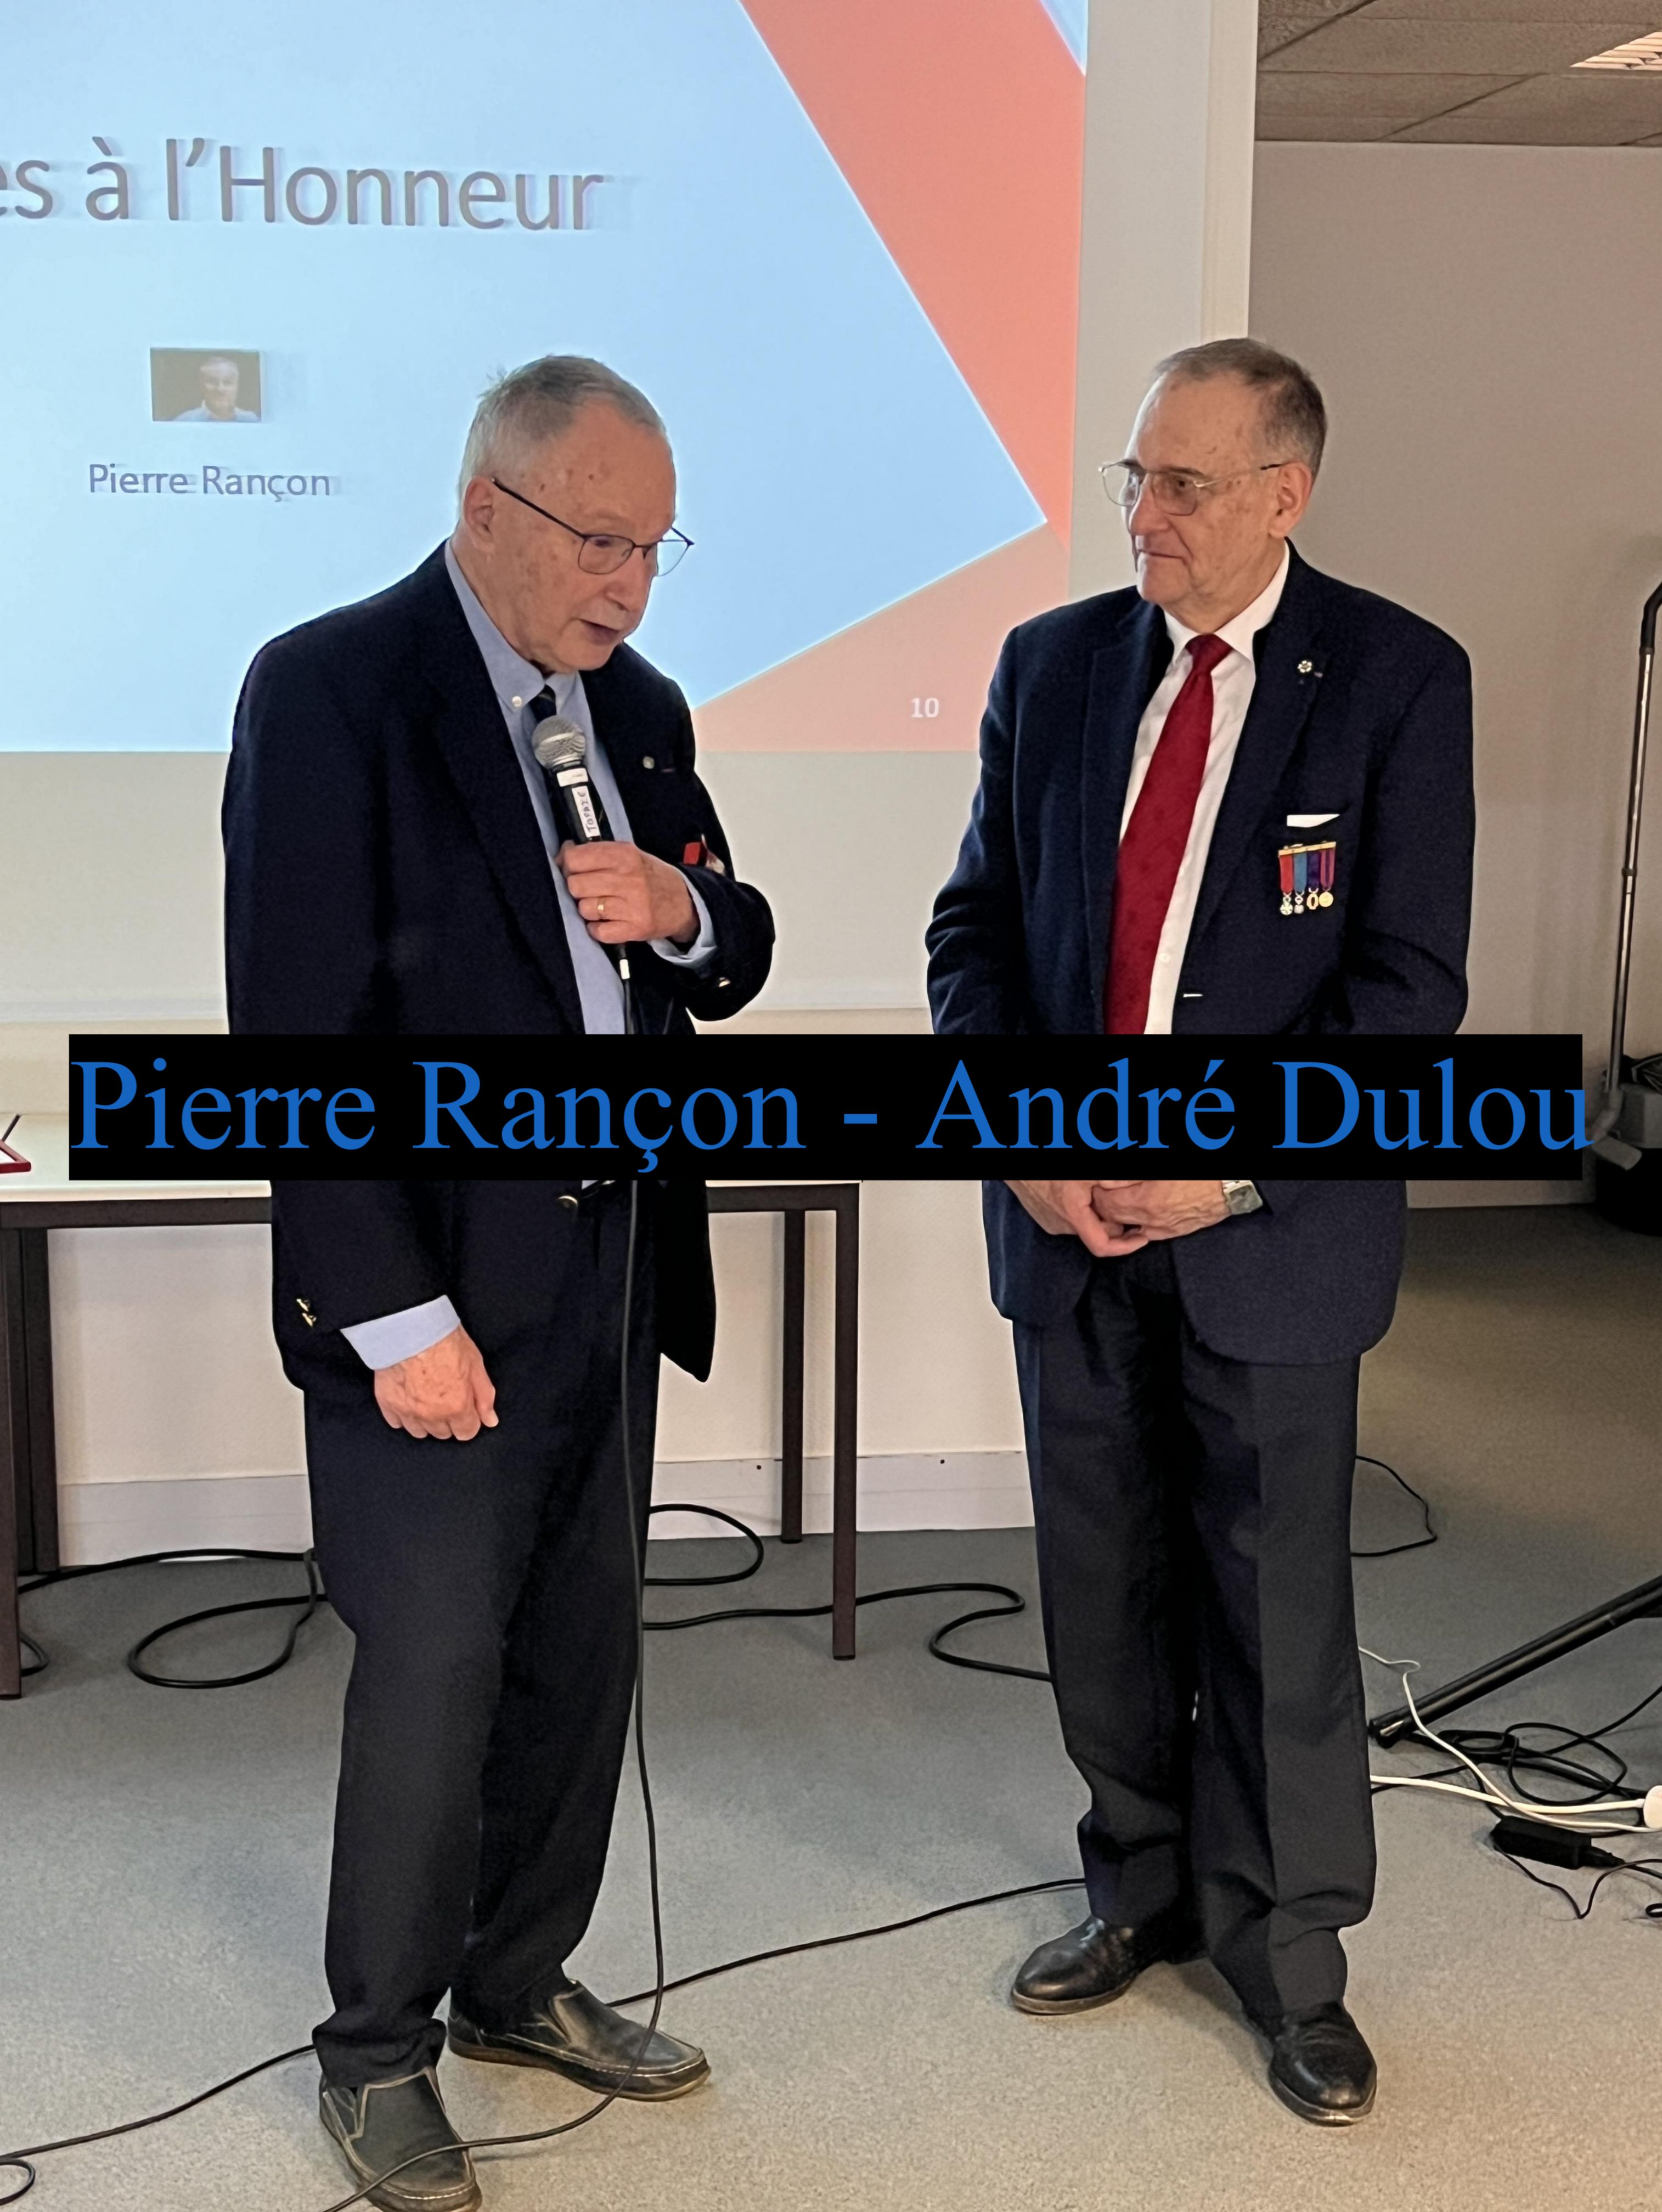 Le colonel André Dulou président de la section gironde a remis le diplôme de président honoraire à Pierre Rançon